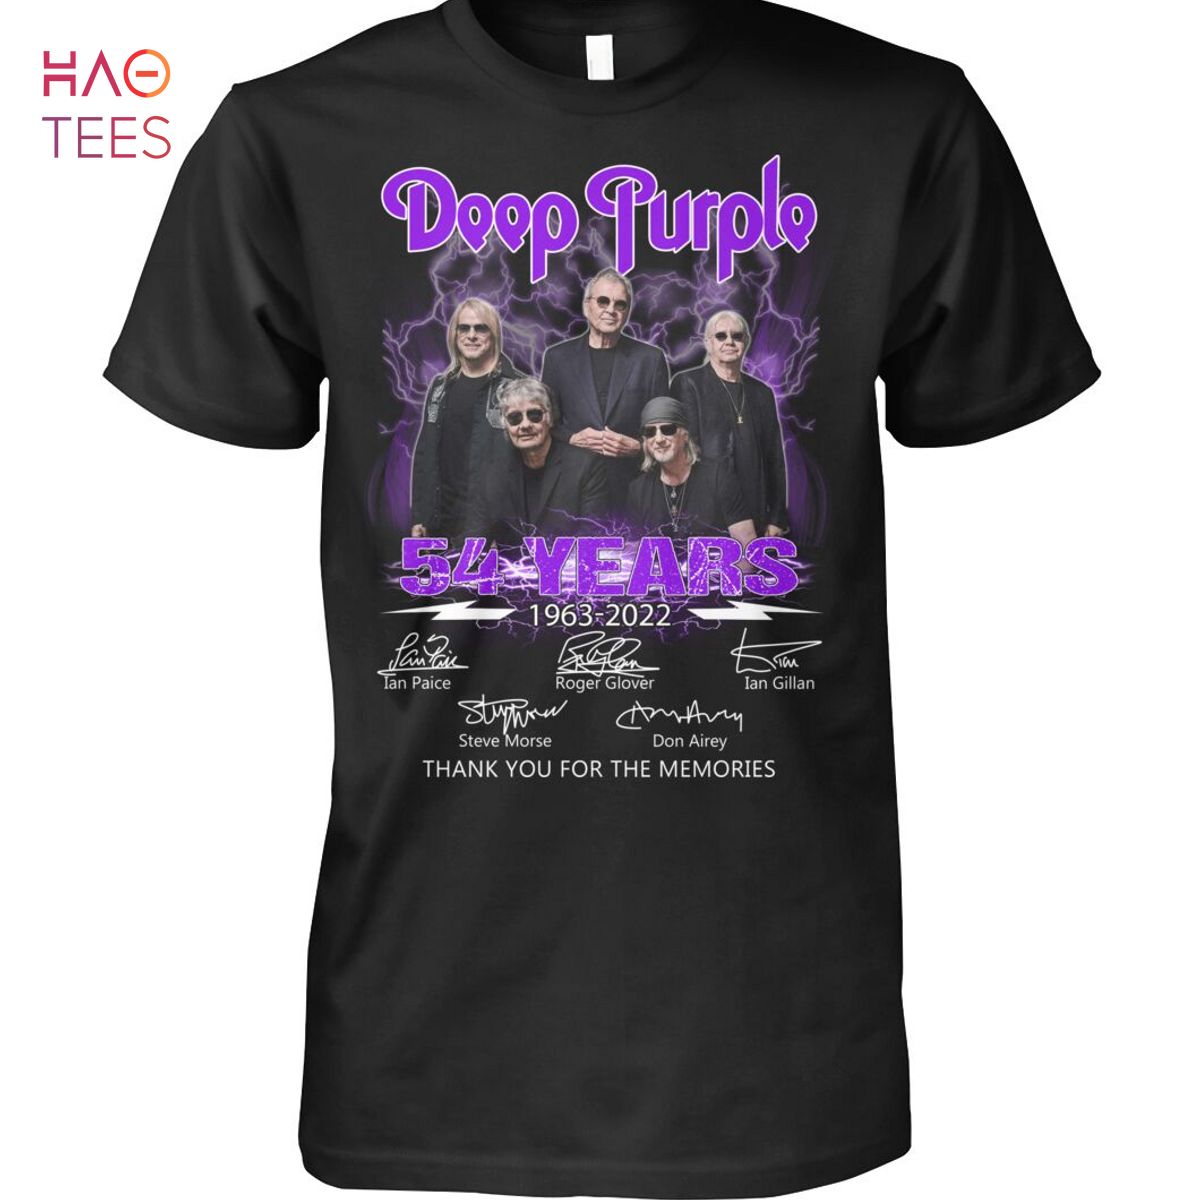 Deep Purple 54 Years 1963-2022 Shirt